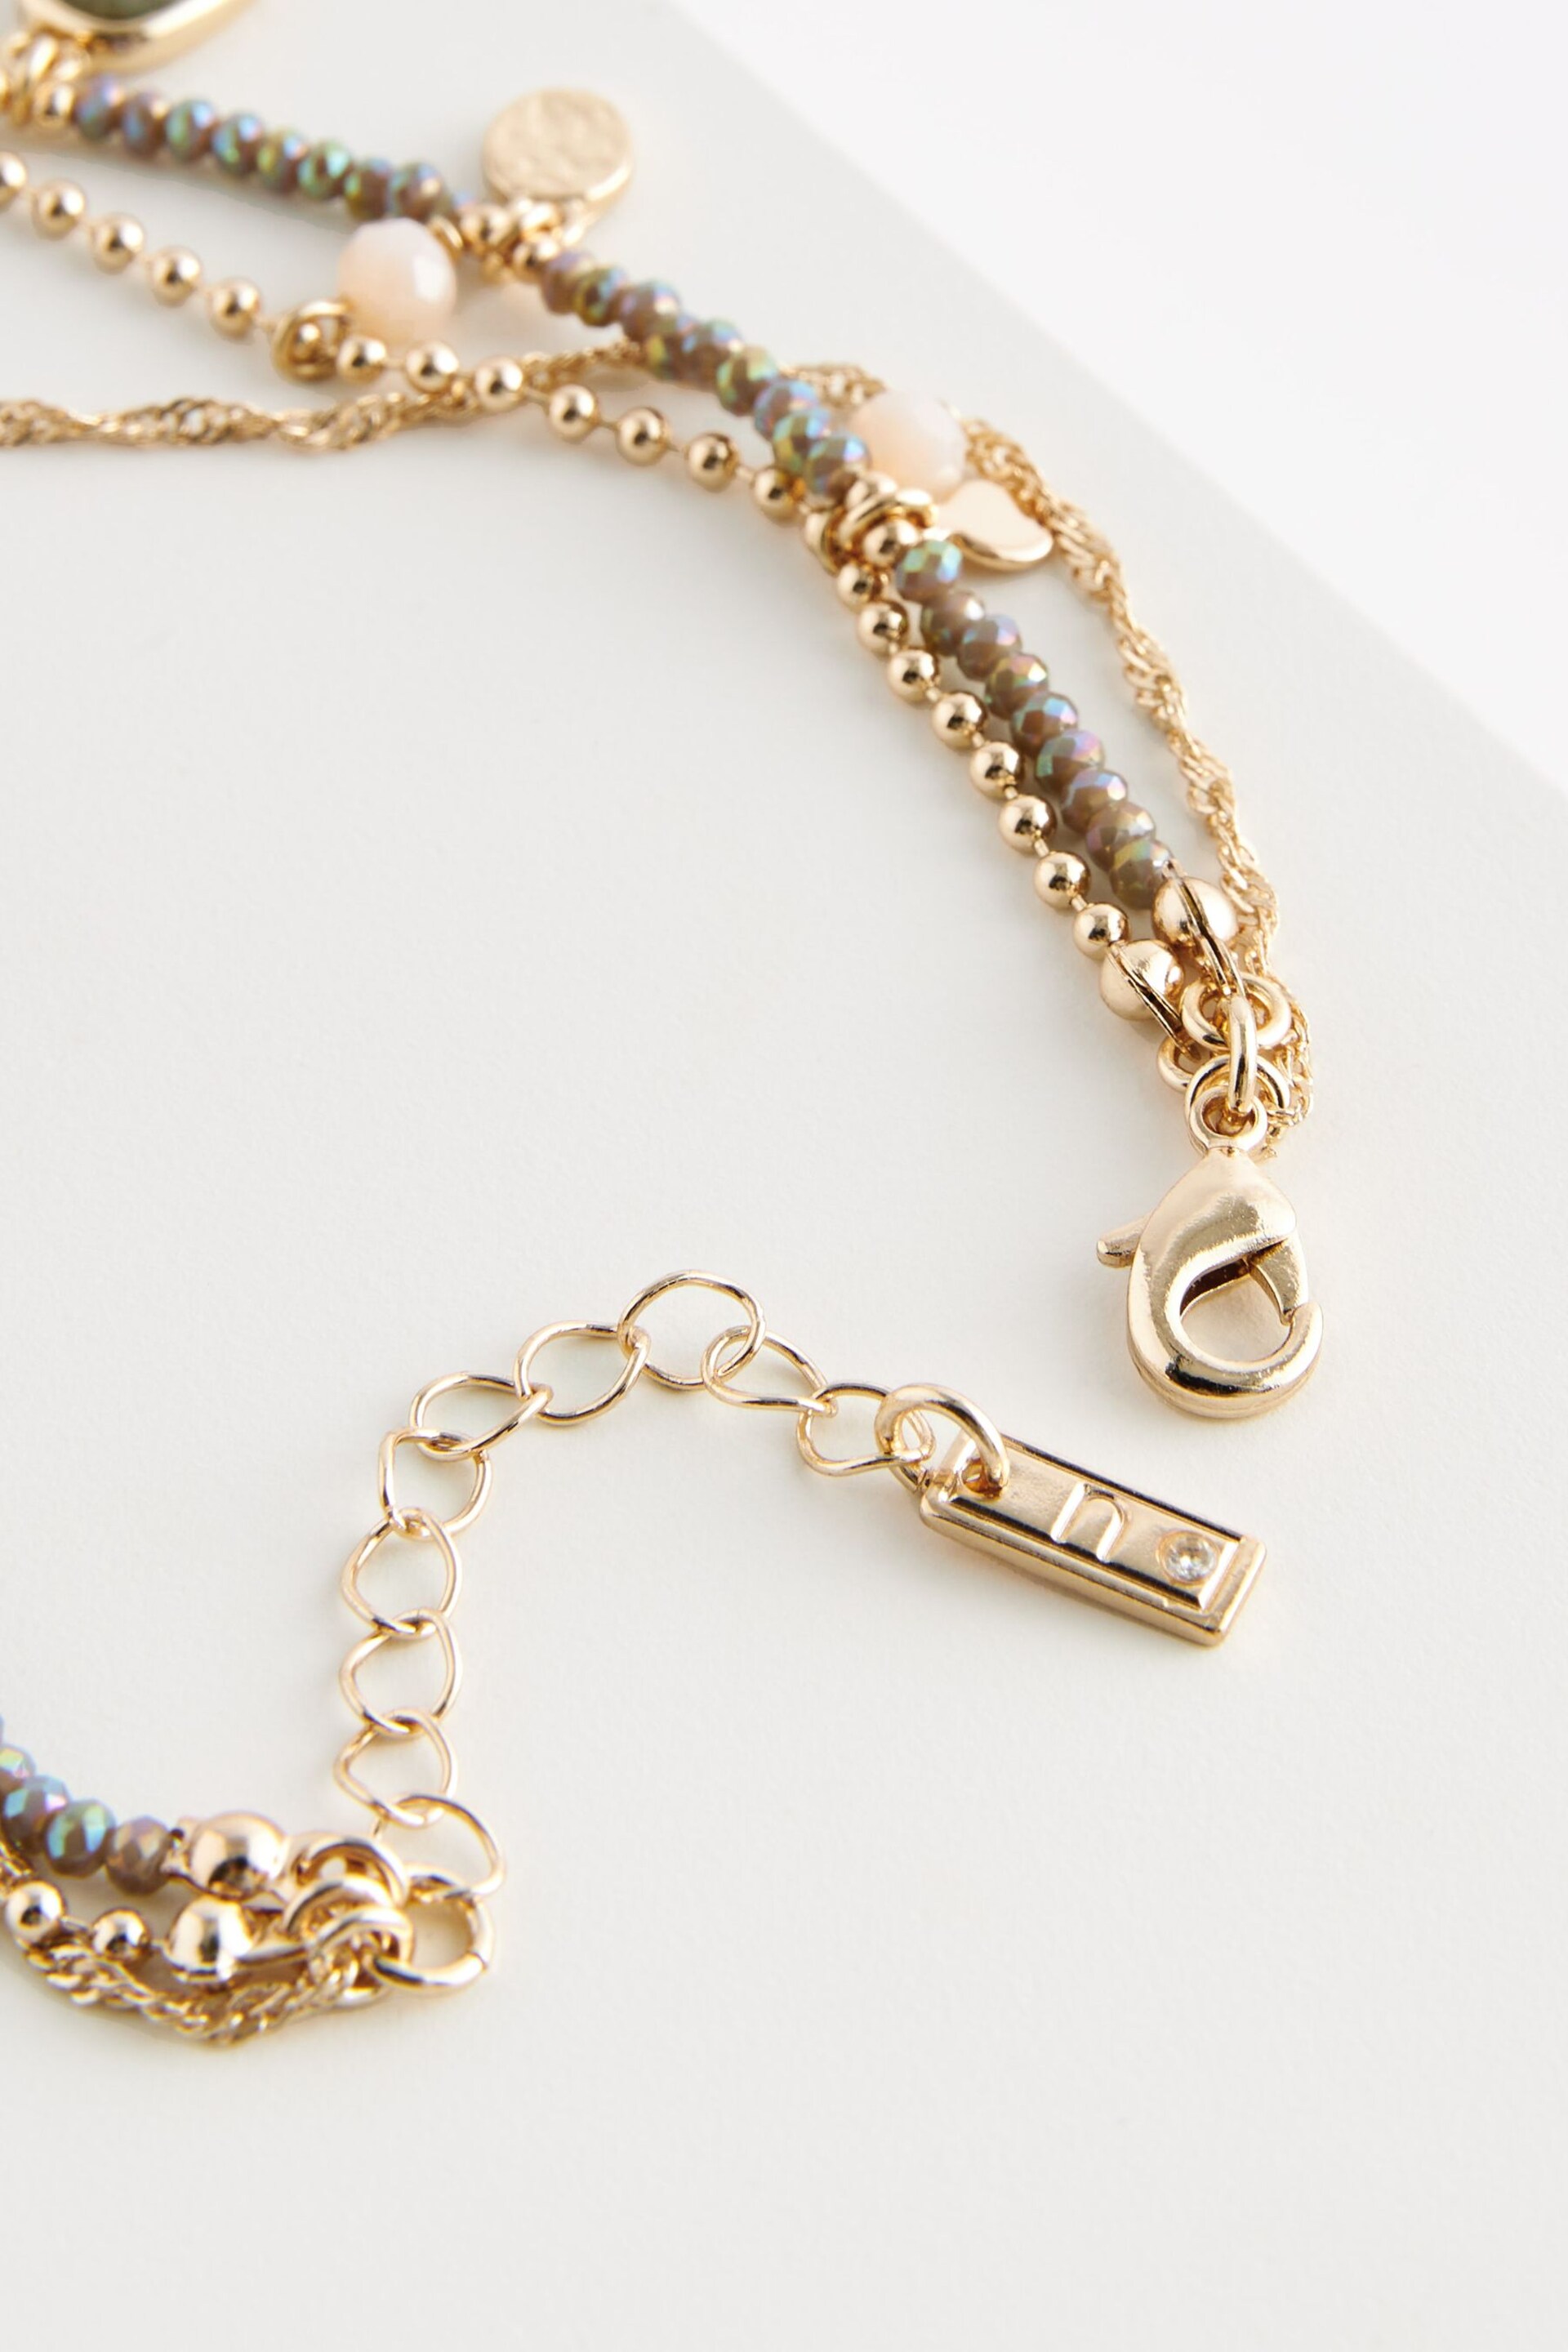 Gold Tone Charm Layered Bracelet - Image 3 of 3